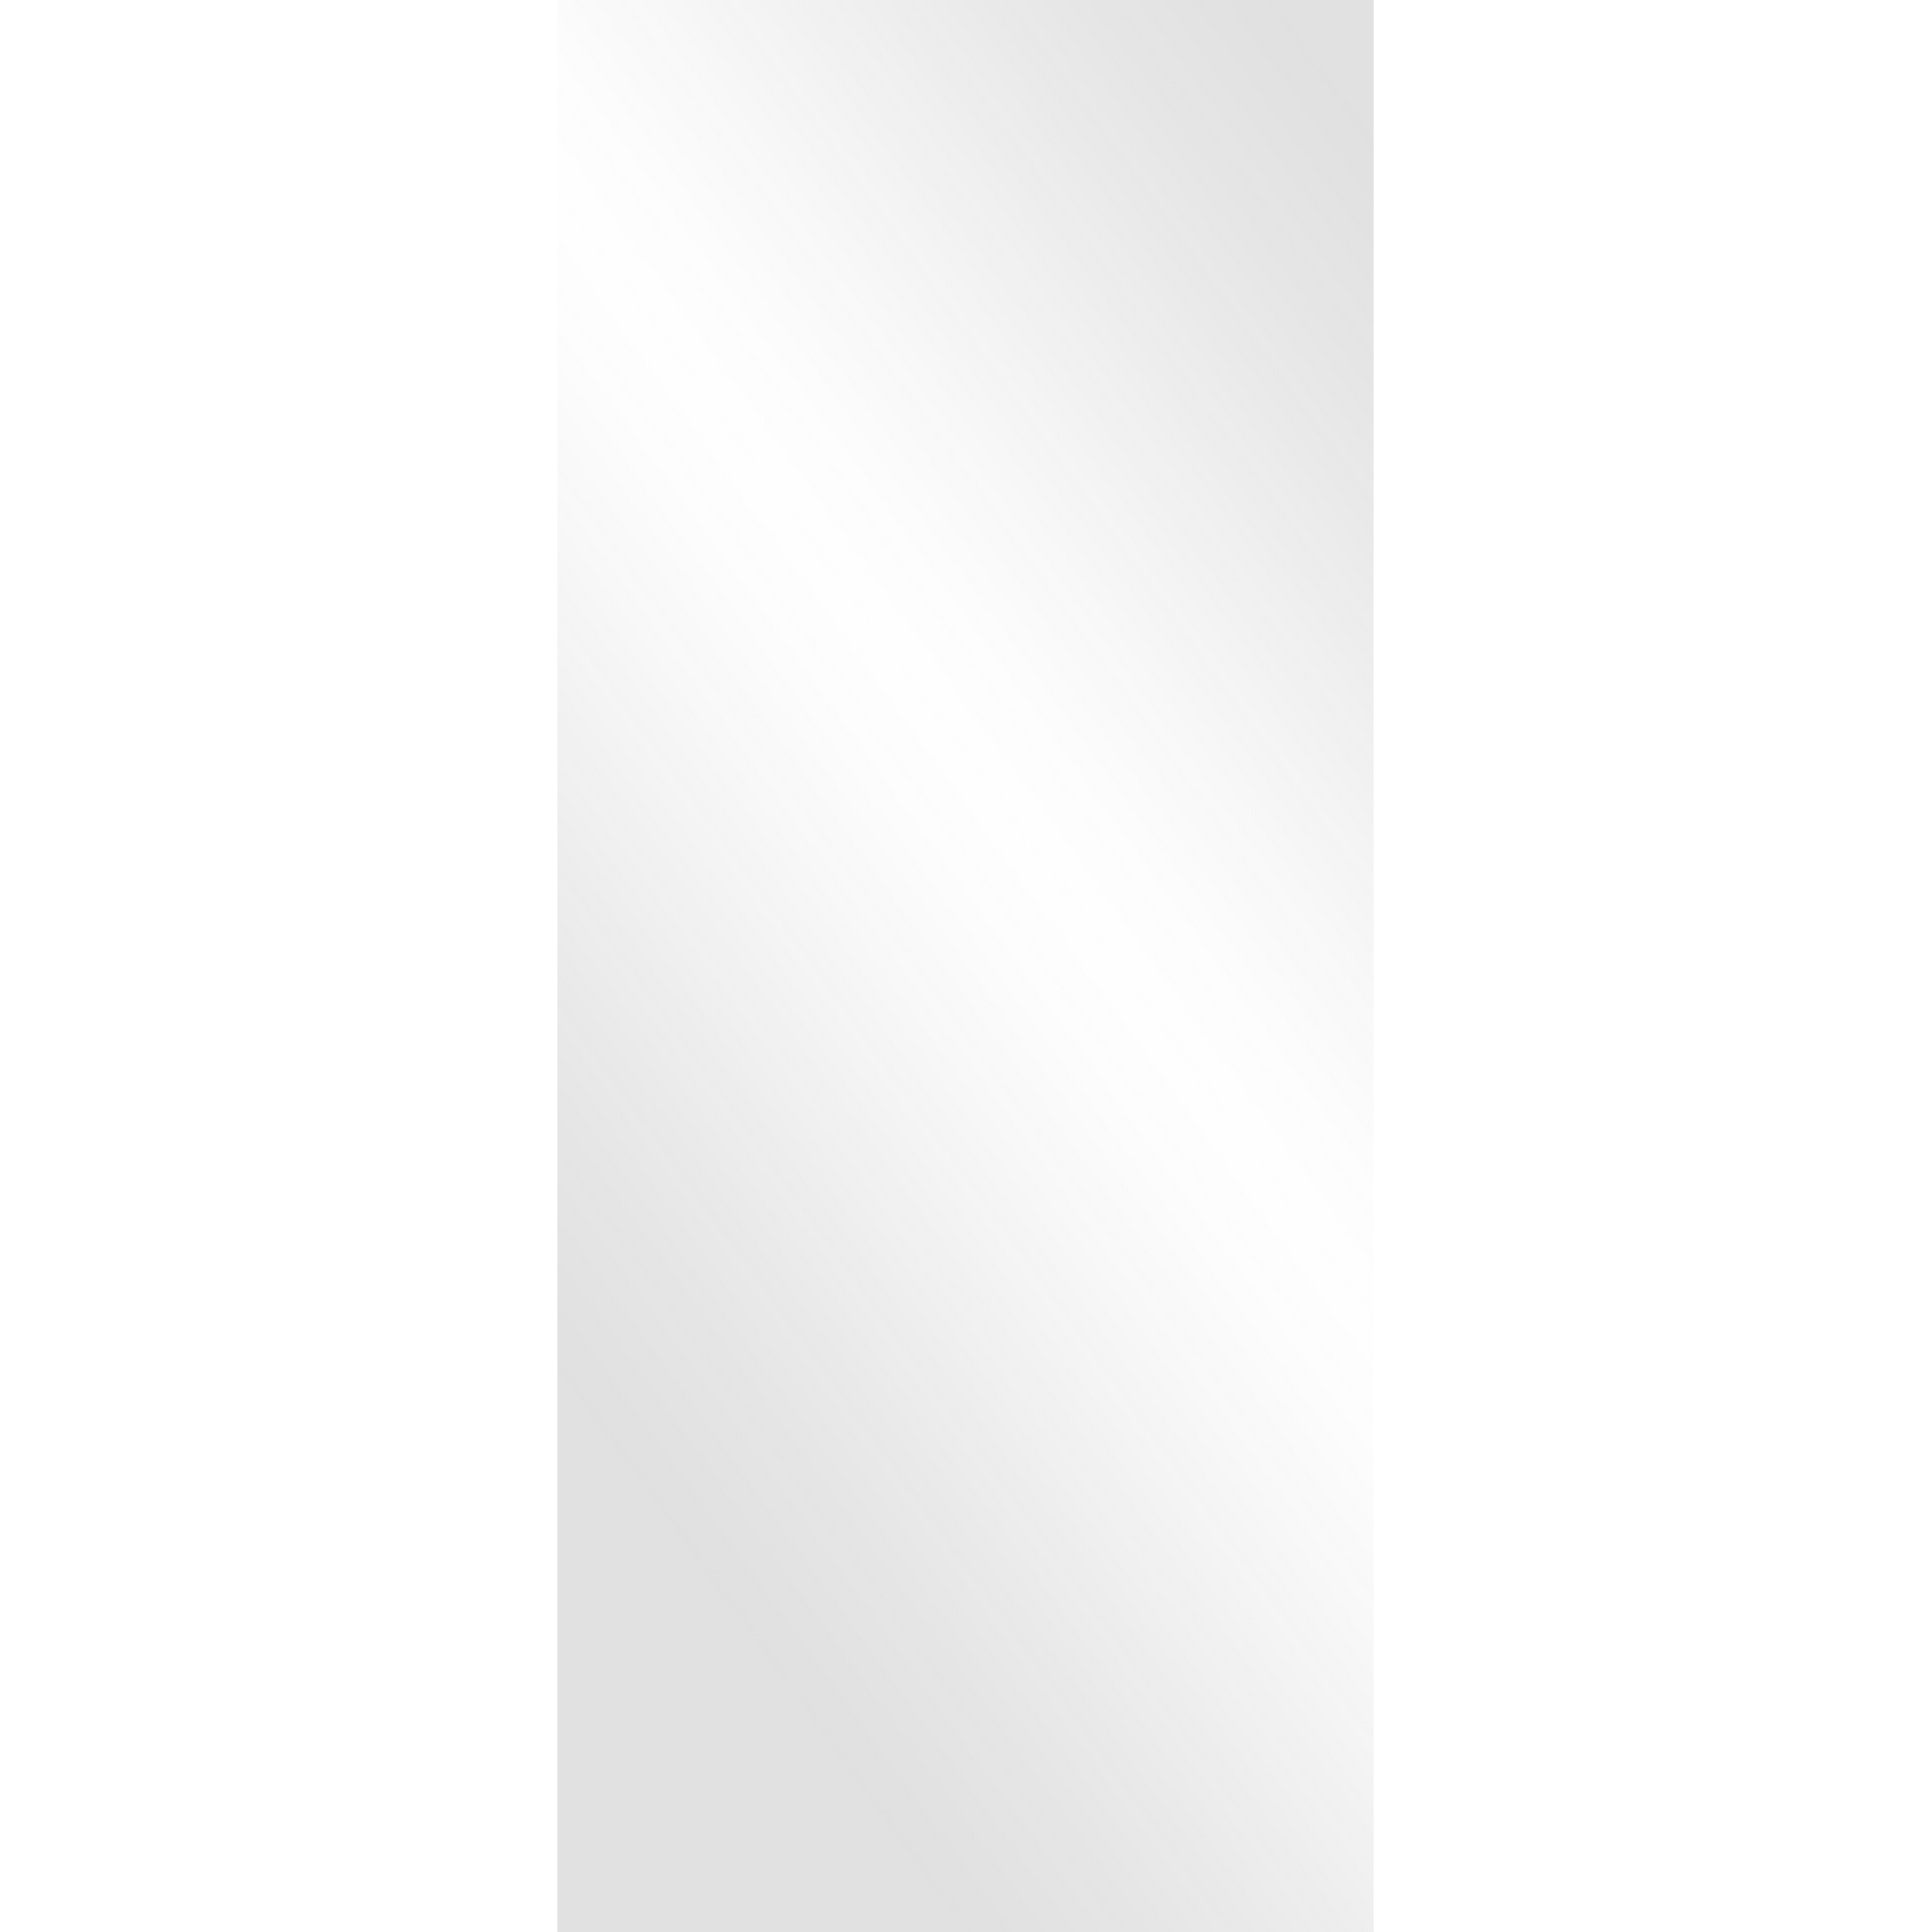 Schiebetür 'Ontario' weiß 93,5 x 205,8 cm + product picture